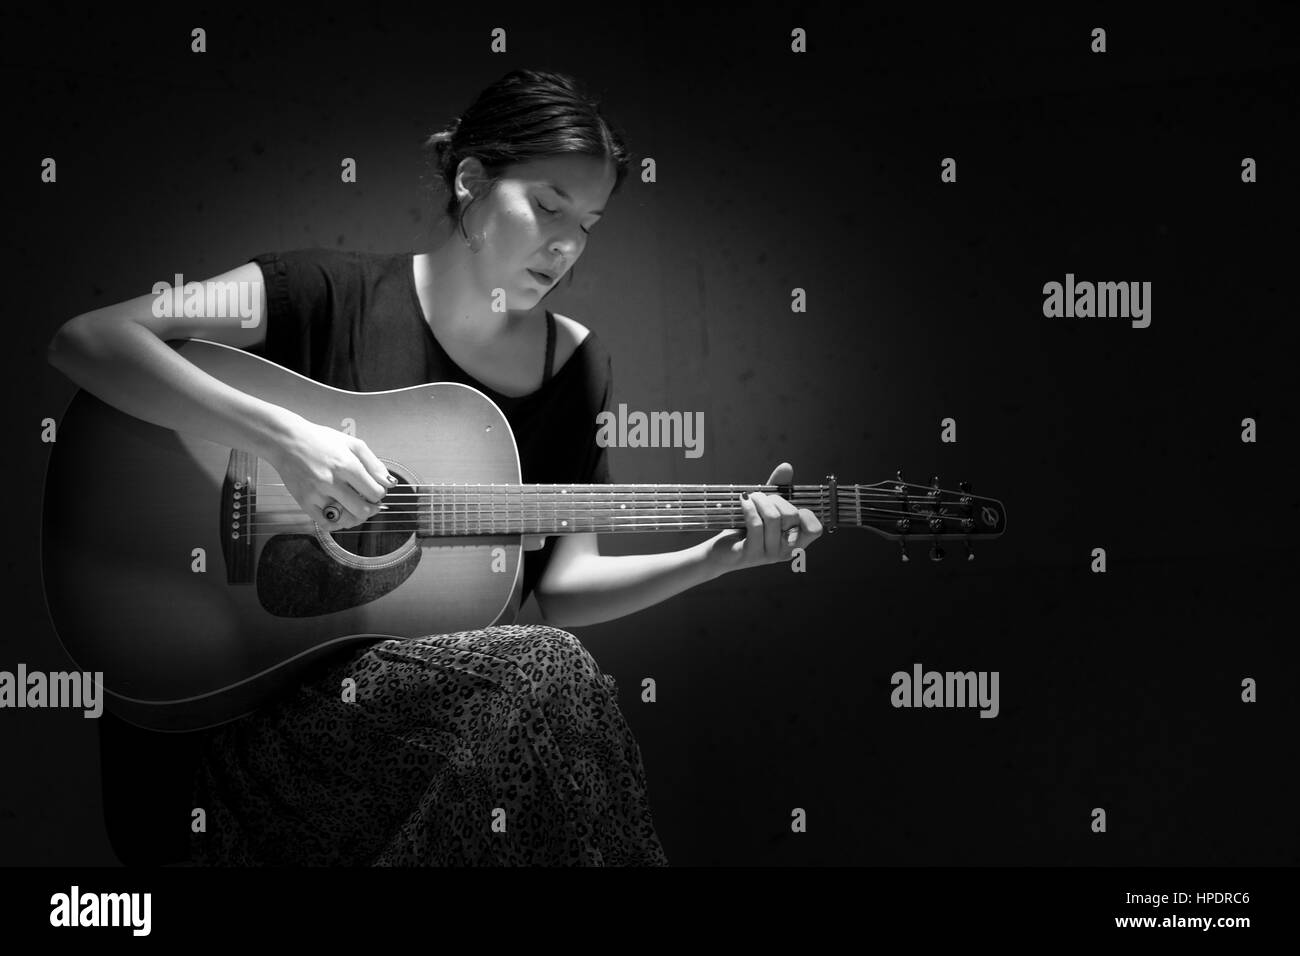 Guitarra española Imágenes de stock en blanco y negro - Página 2 - Alamy